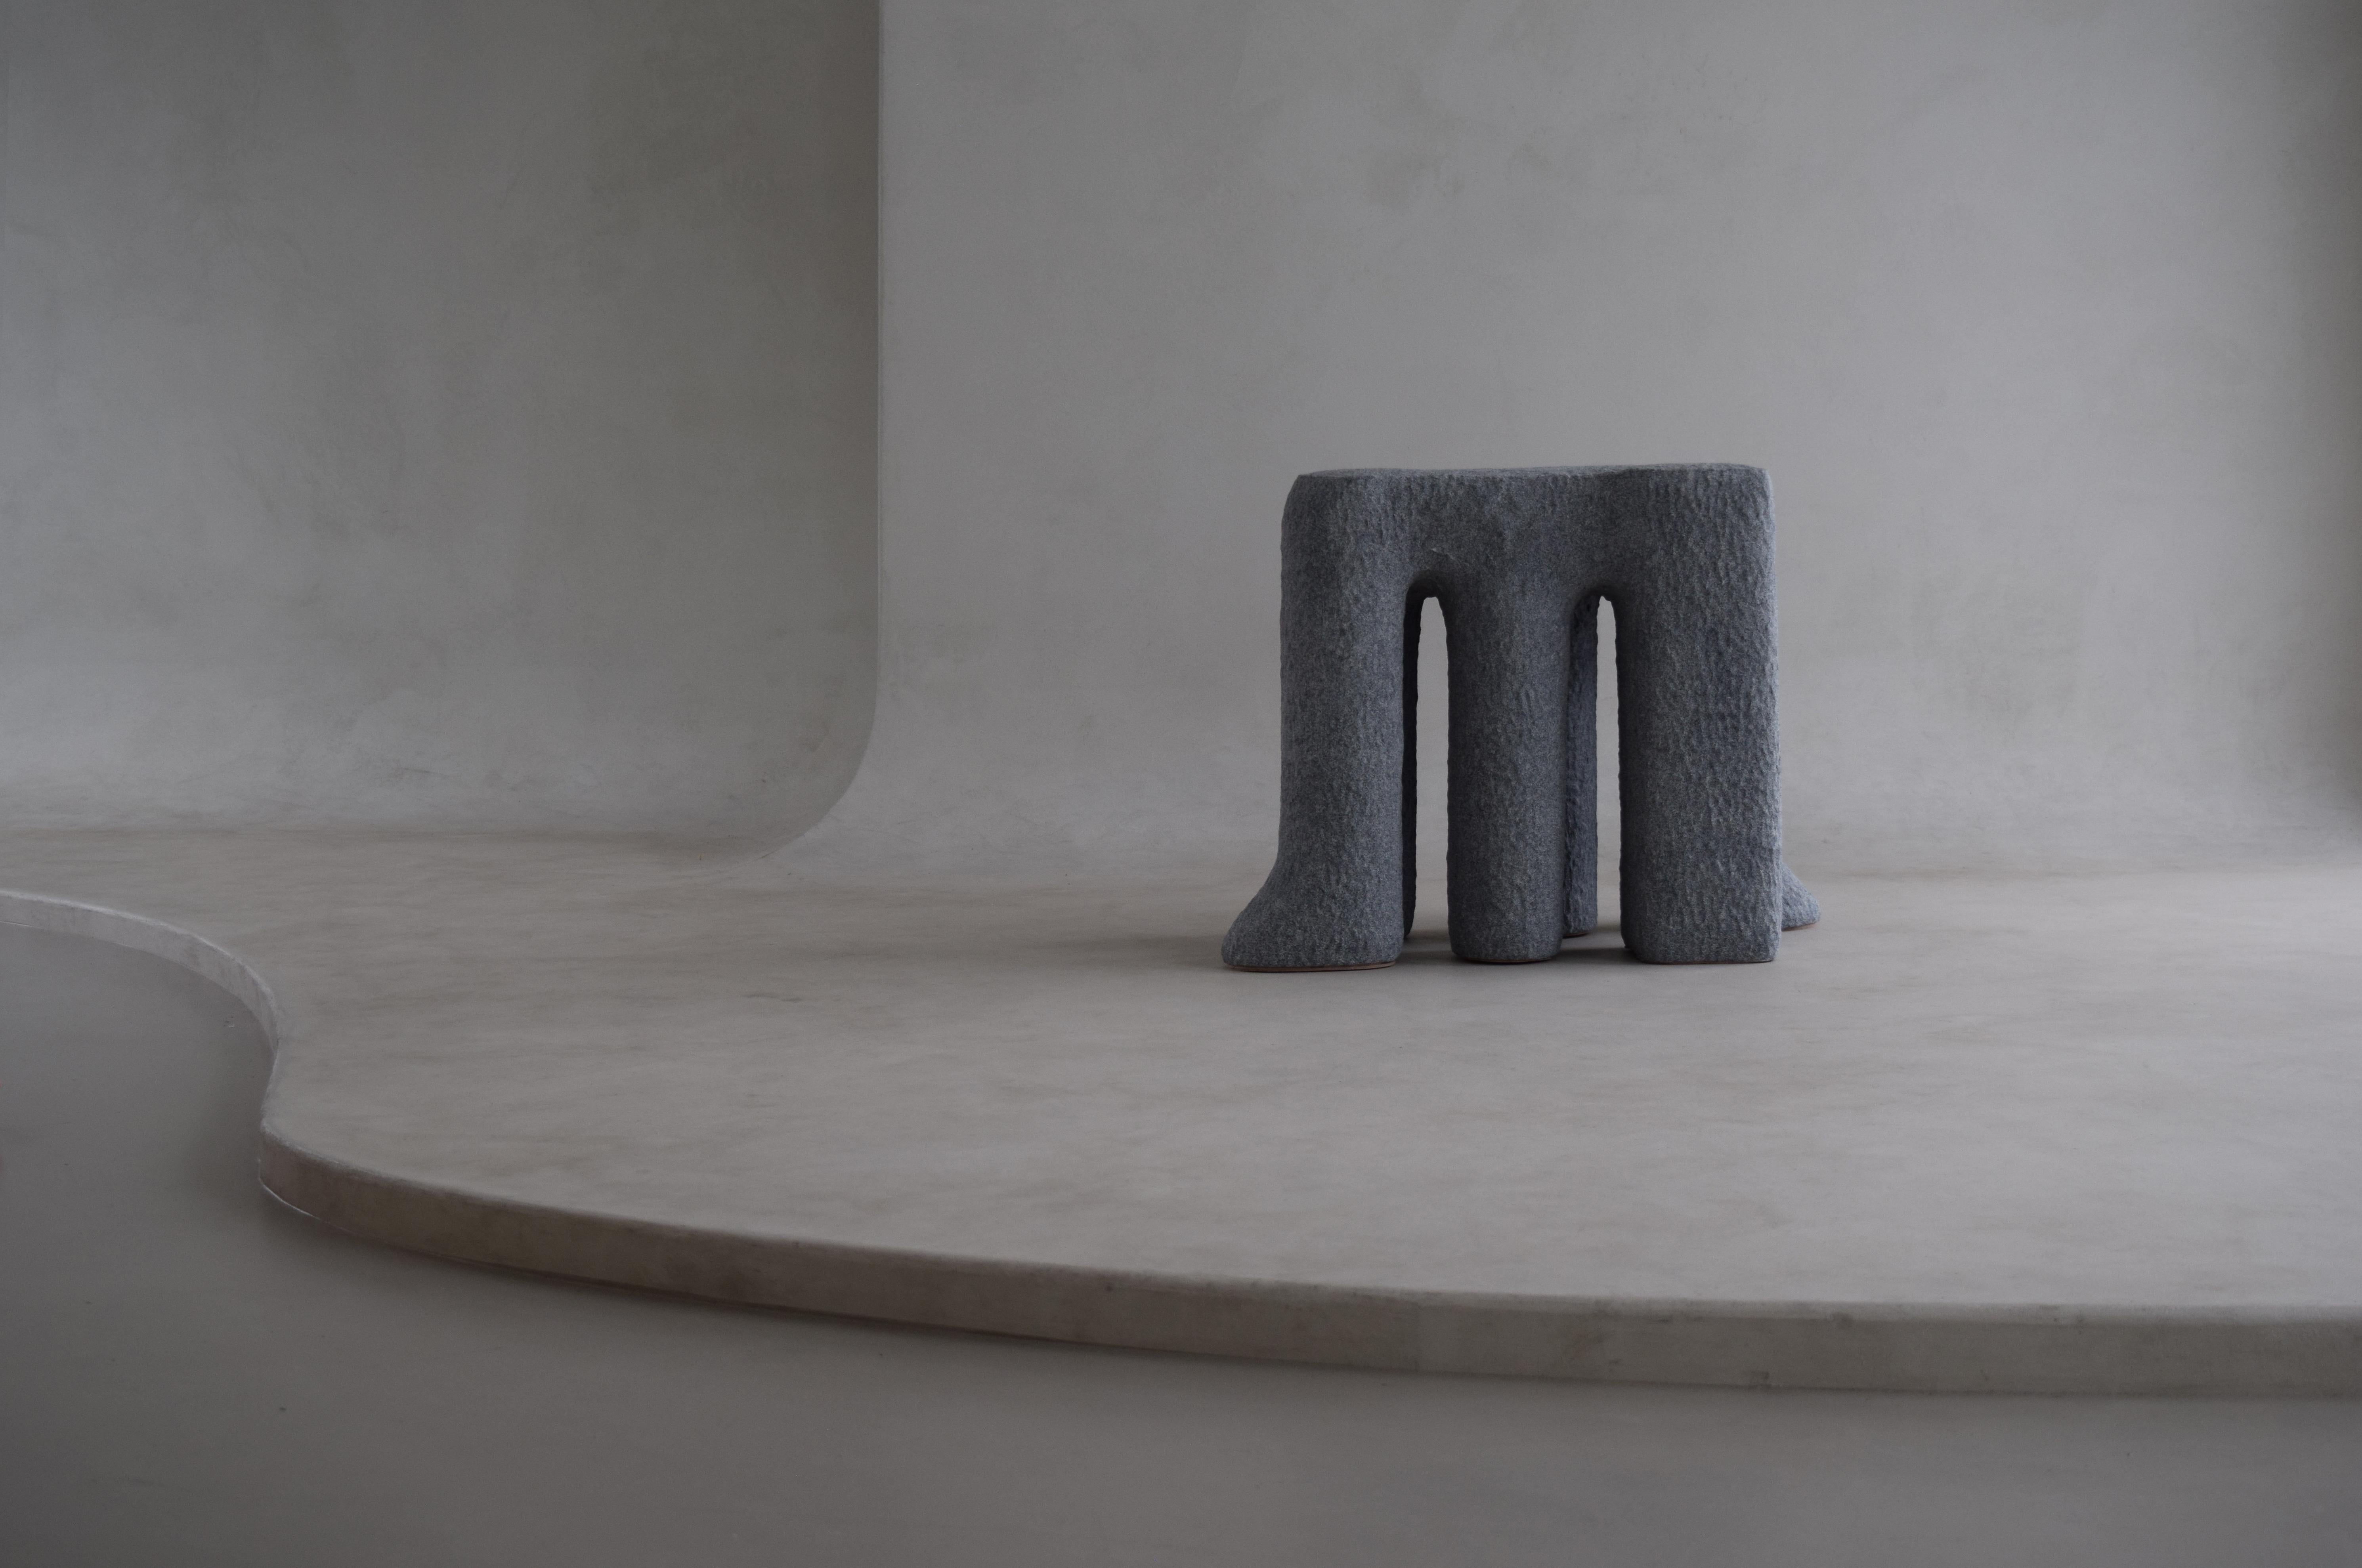 La série Pillar est une série de tabourets/tables d'appoint fabriqués à la main en céramique. 

Dimension :
75 x 40 x 54 cm H

Utilisation de grès et de matériaux de finition en sable / techniques de construction manuelle de la